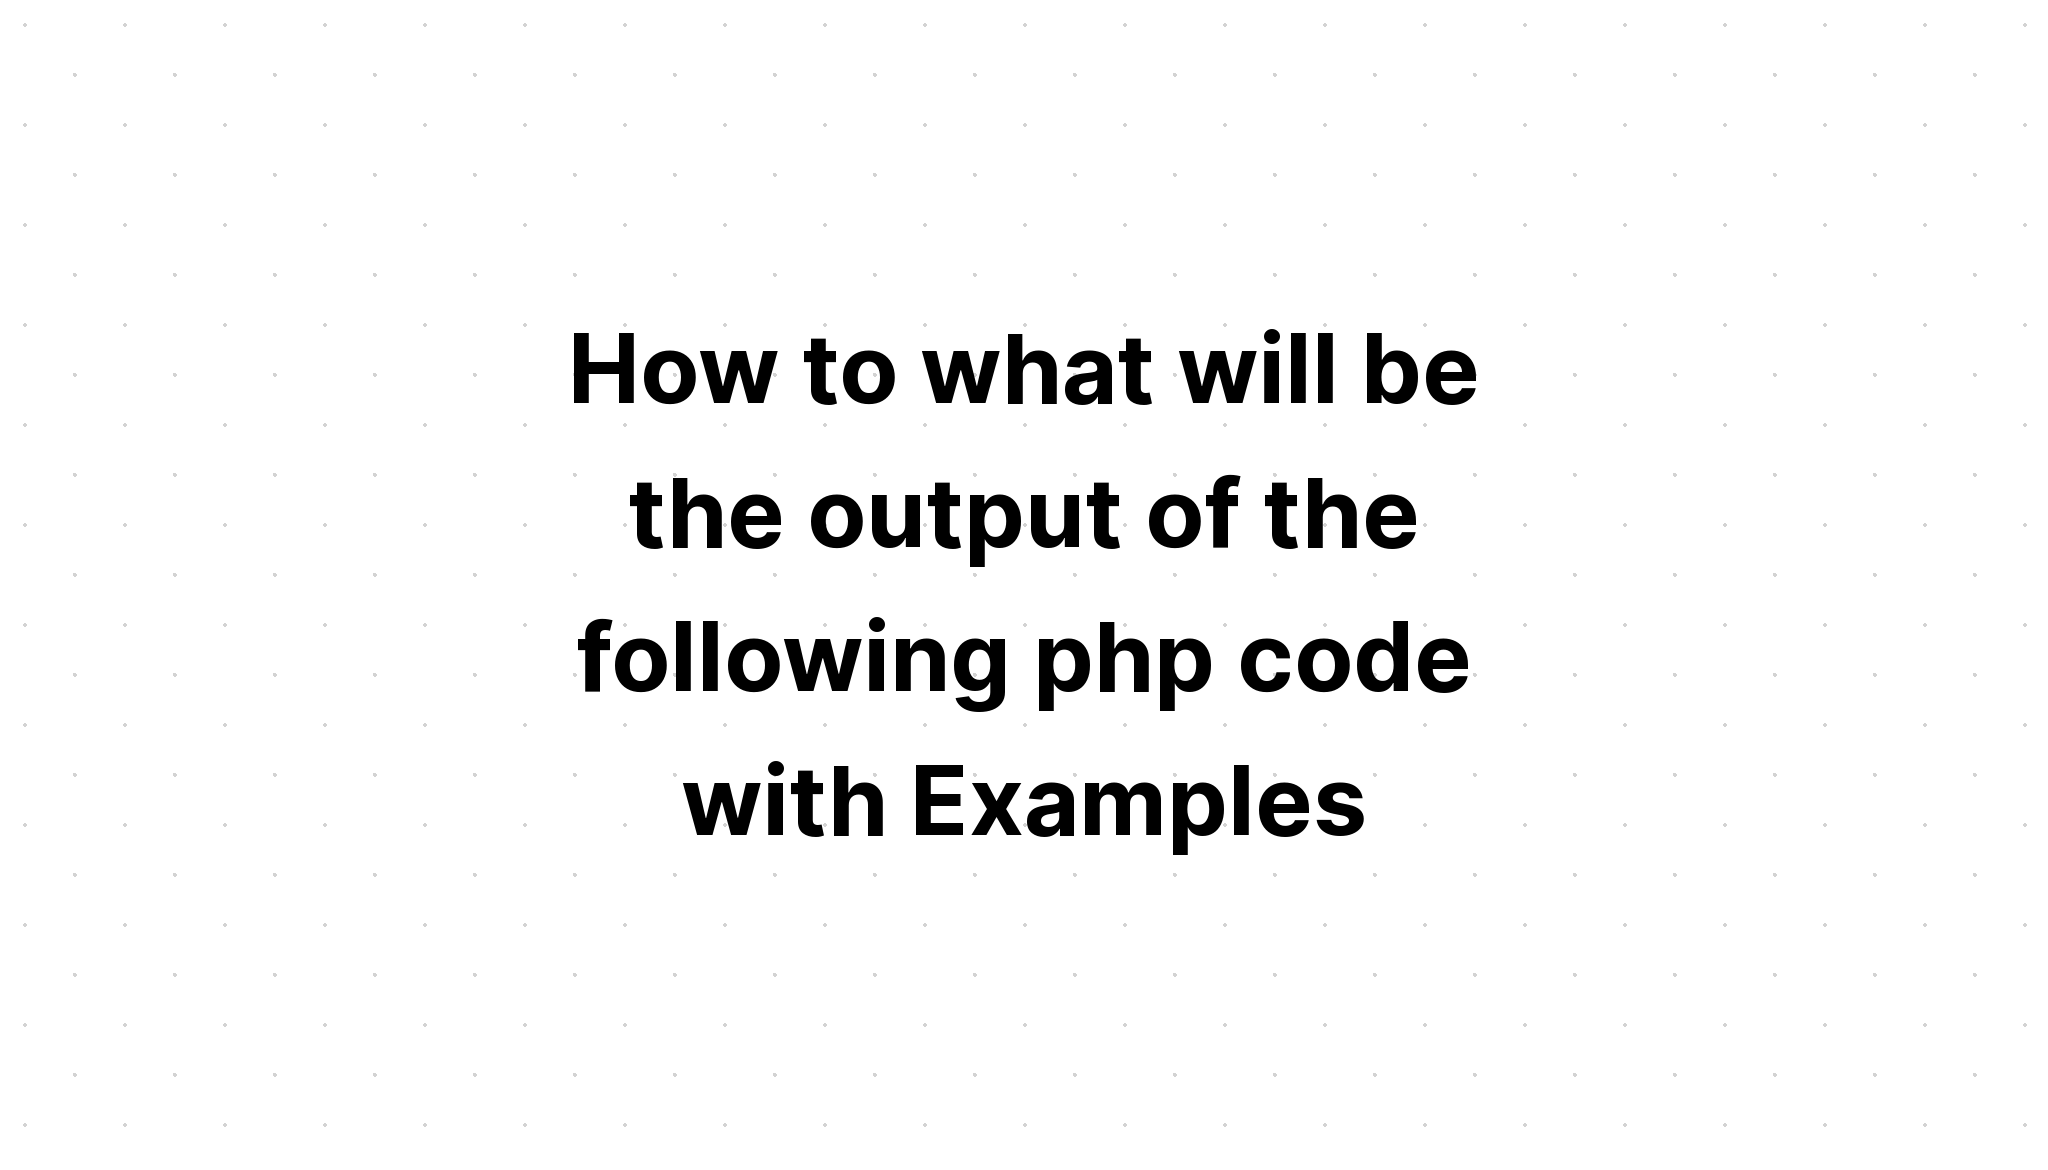 Bagaimana output dari kode php berikut dengan Contoh